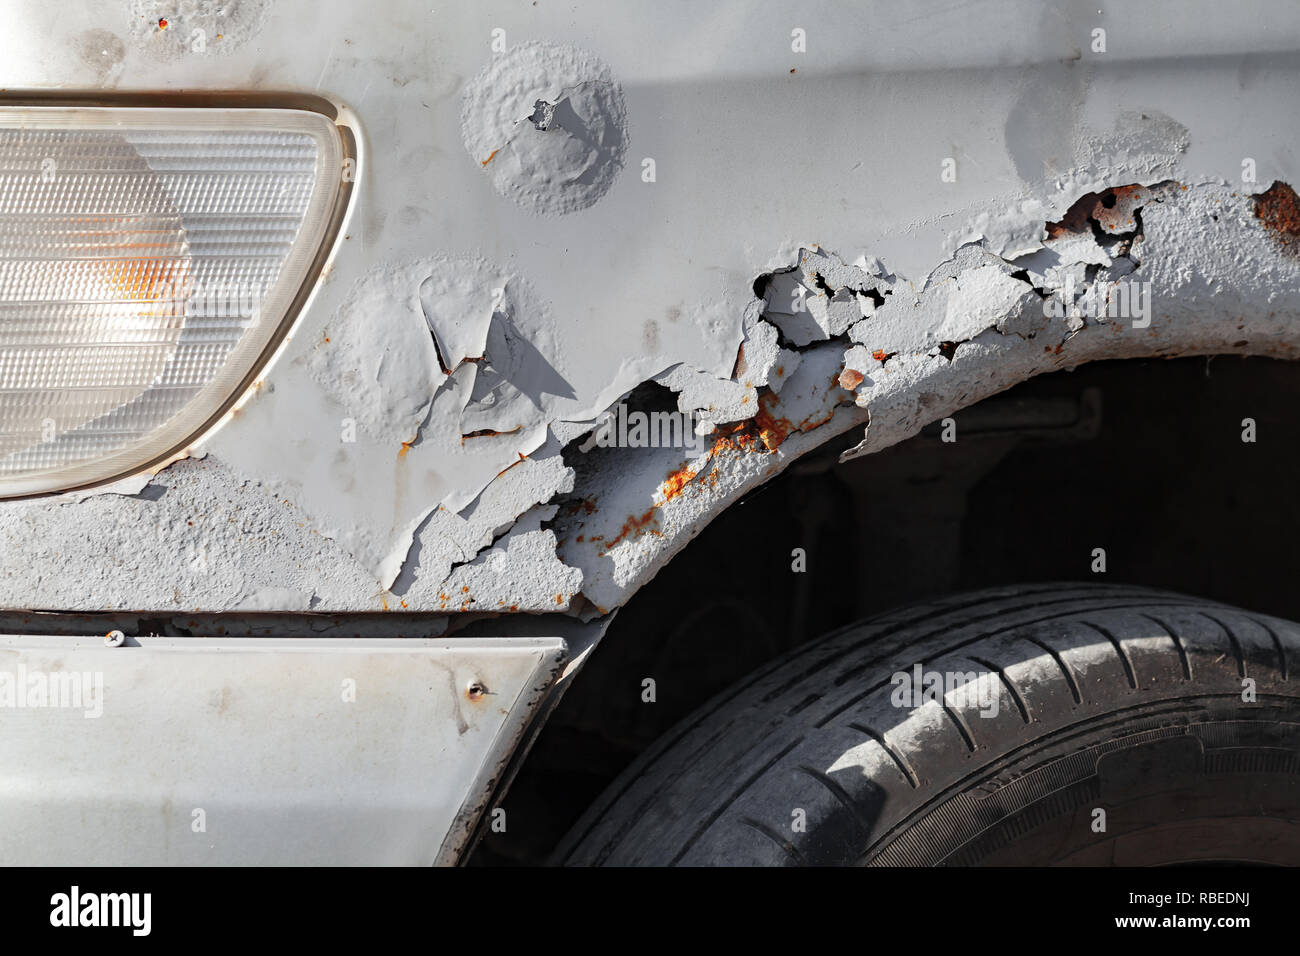 Vieille voiture endommagé avant de l'aile avec de la rouille, des trous et des rayures, close-up photo Banque D'Images